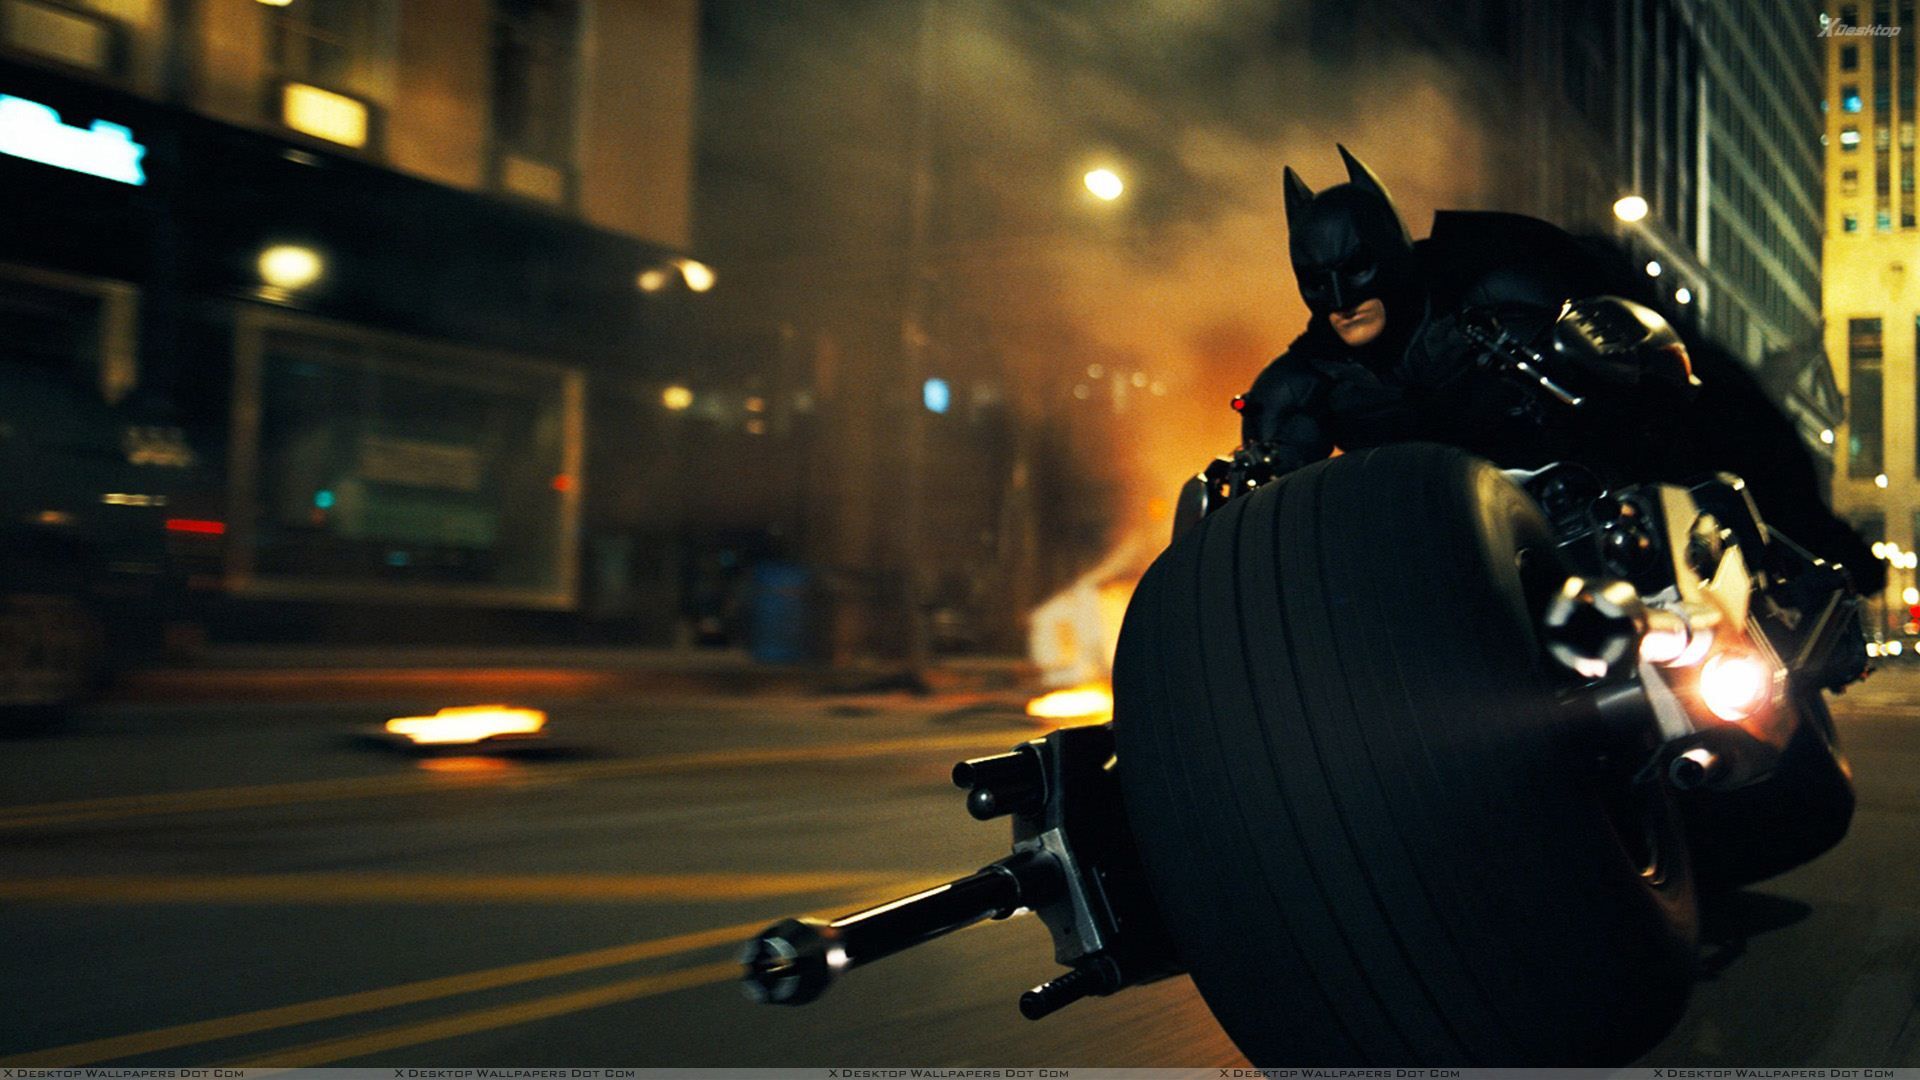 Batman The Dark Knight Rises Bike Wallpaper HD Ideas For